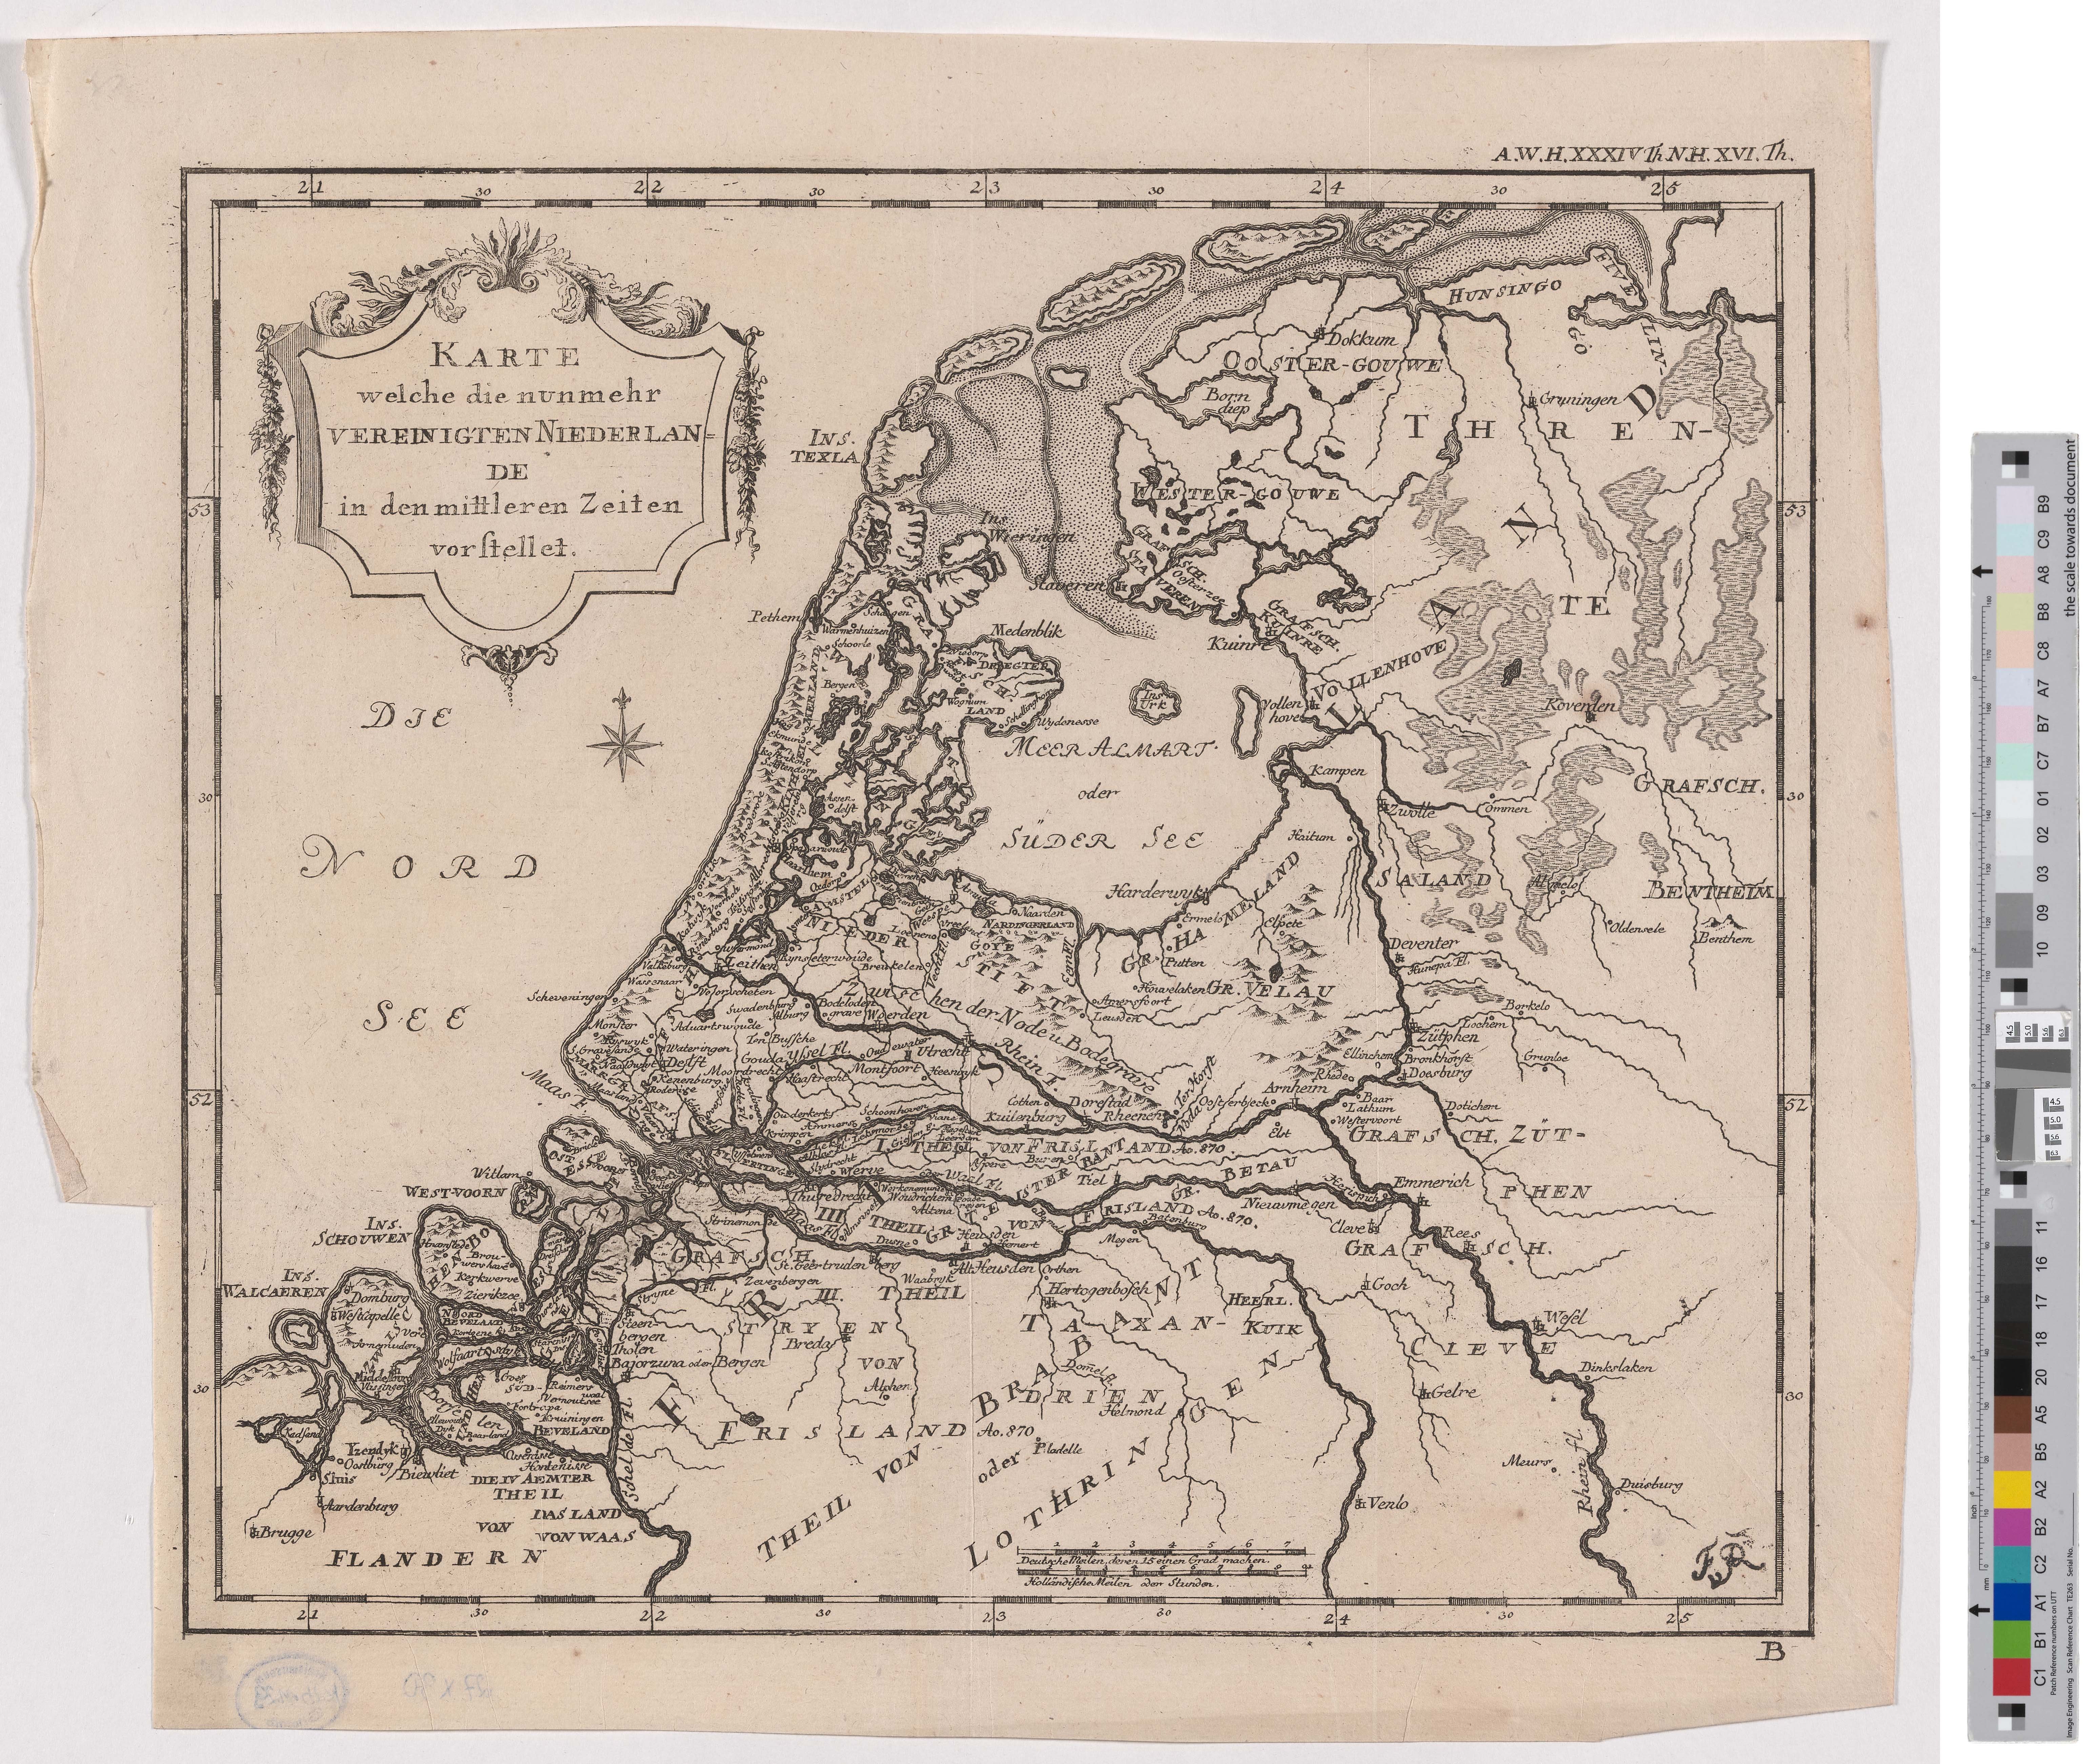 Landkarte "Karte welche die nunmehr Vereinigten Niederlande in den mittleren Zeiten vorgestellt" (Kreismuseum Grimma RR-F)